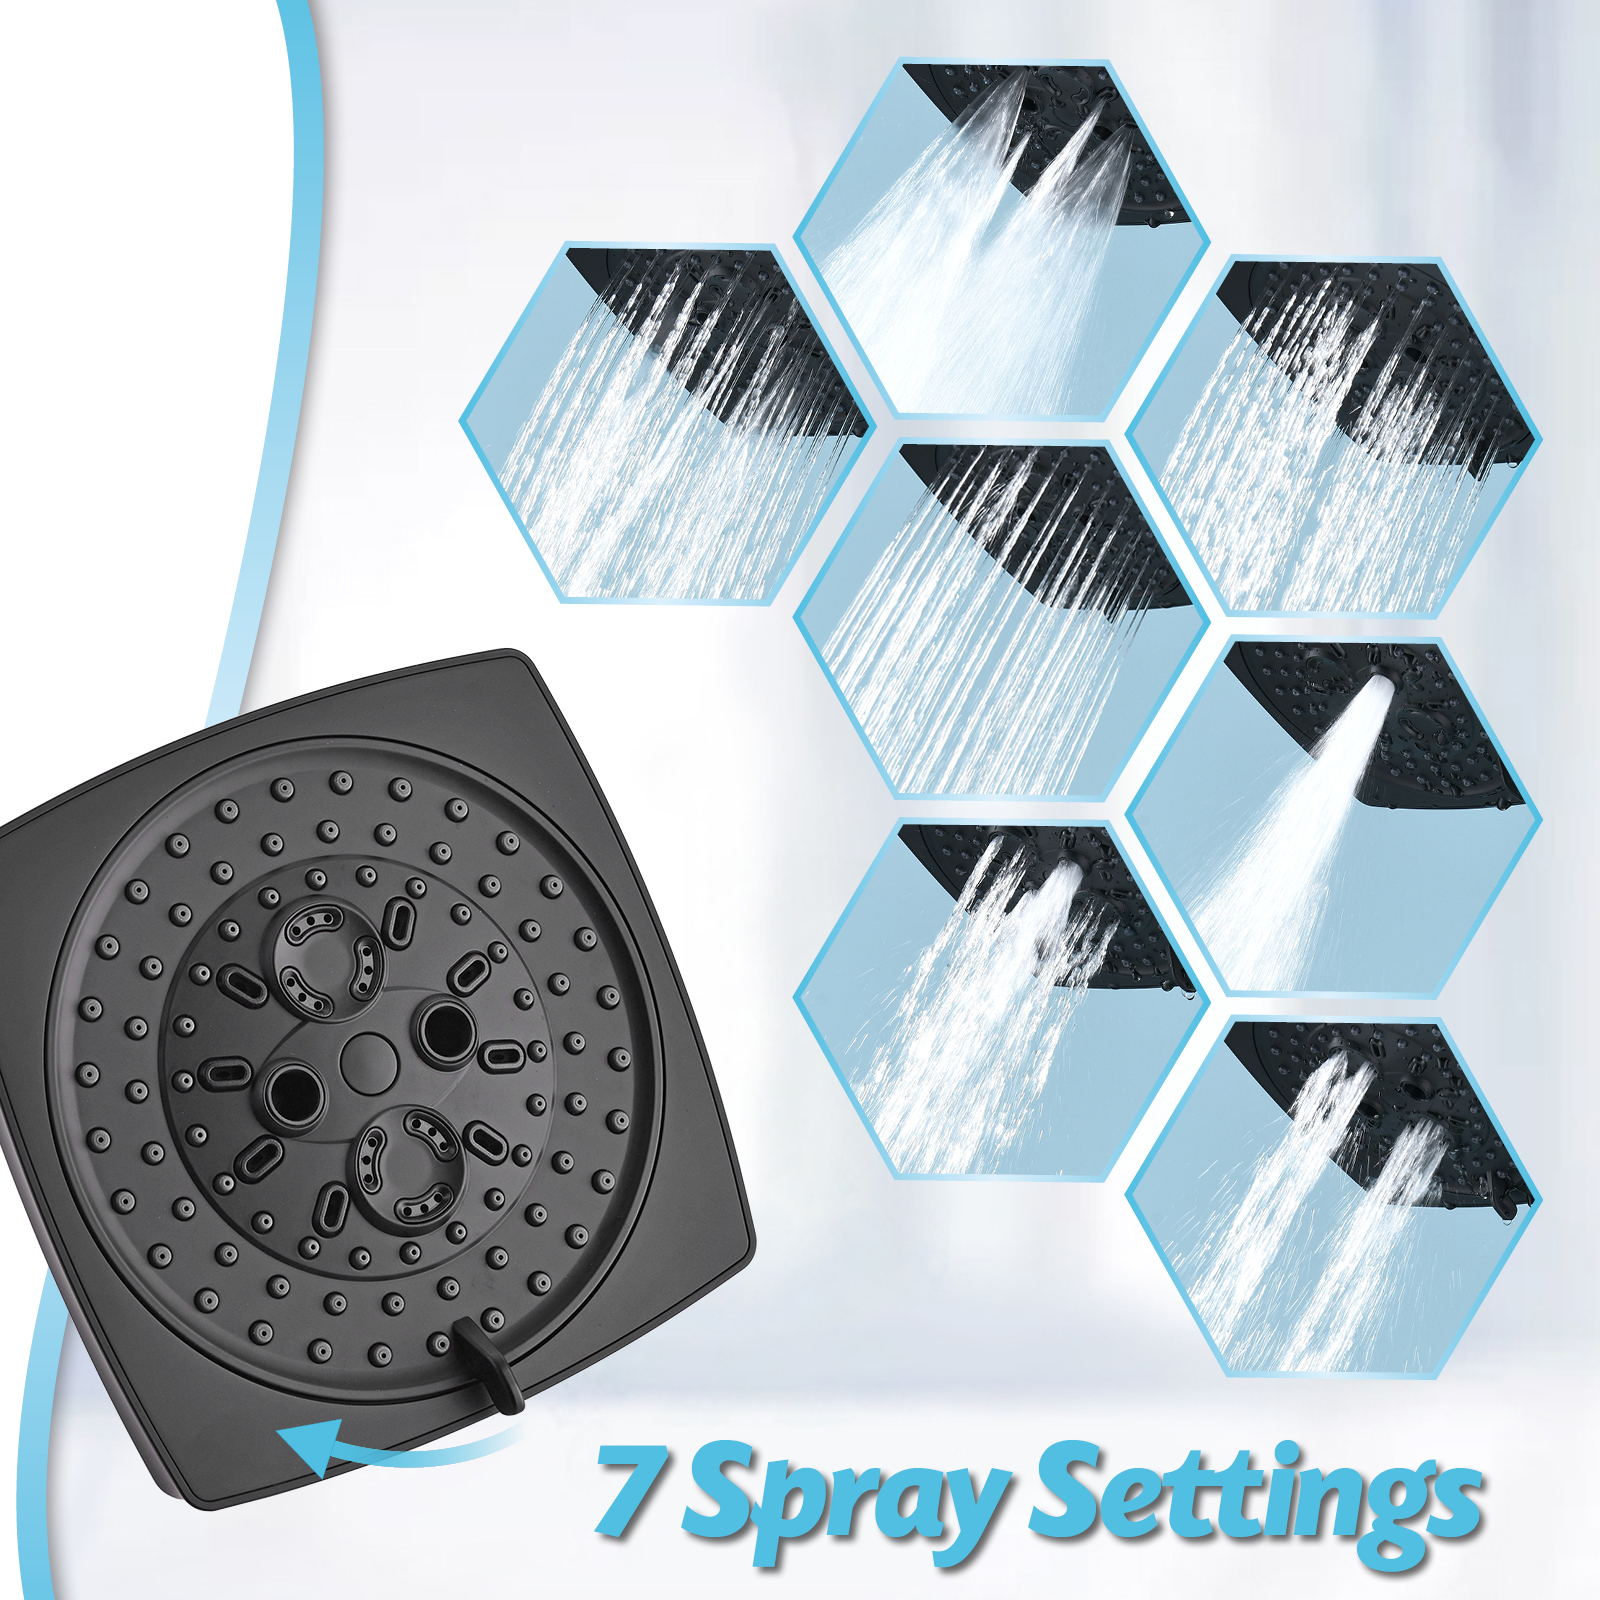 Black Shower Mixer Faucets Upc Black Faucet Bathroom Parts Shower Tap Set Square Shower Faucet